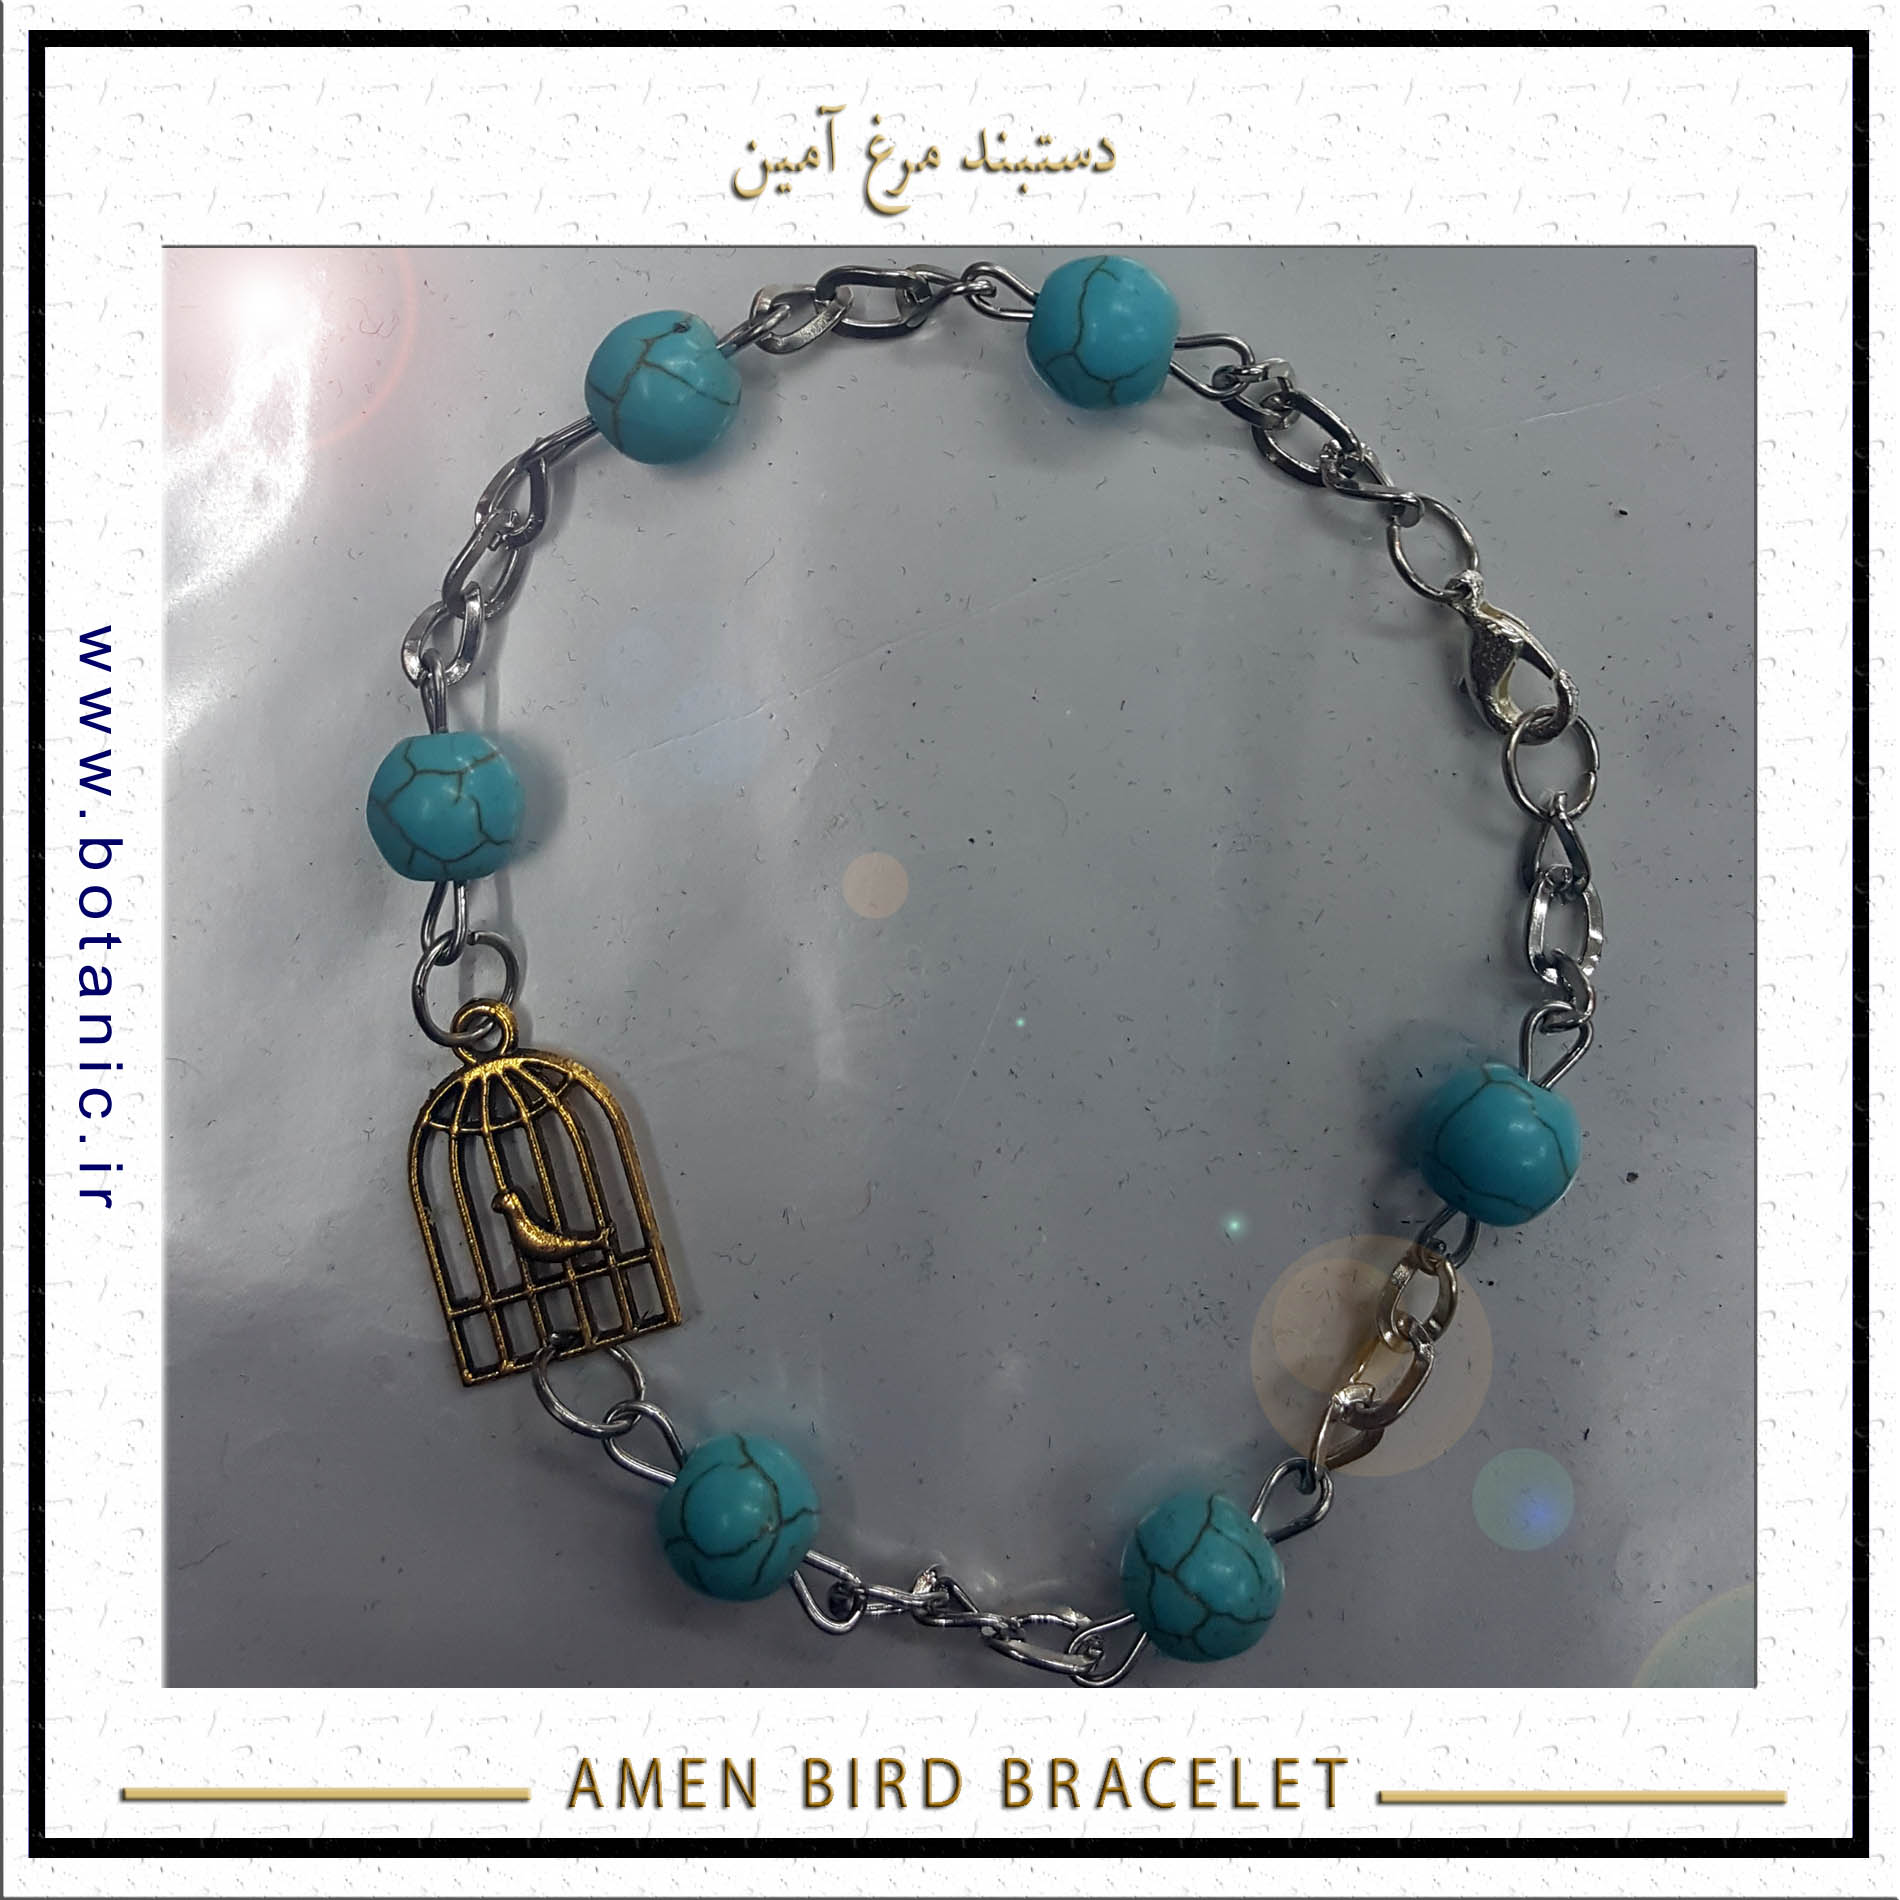 Amen Bird Bracelet